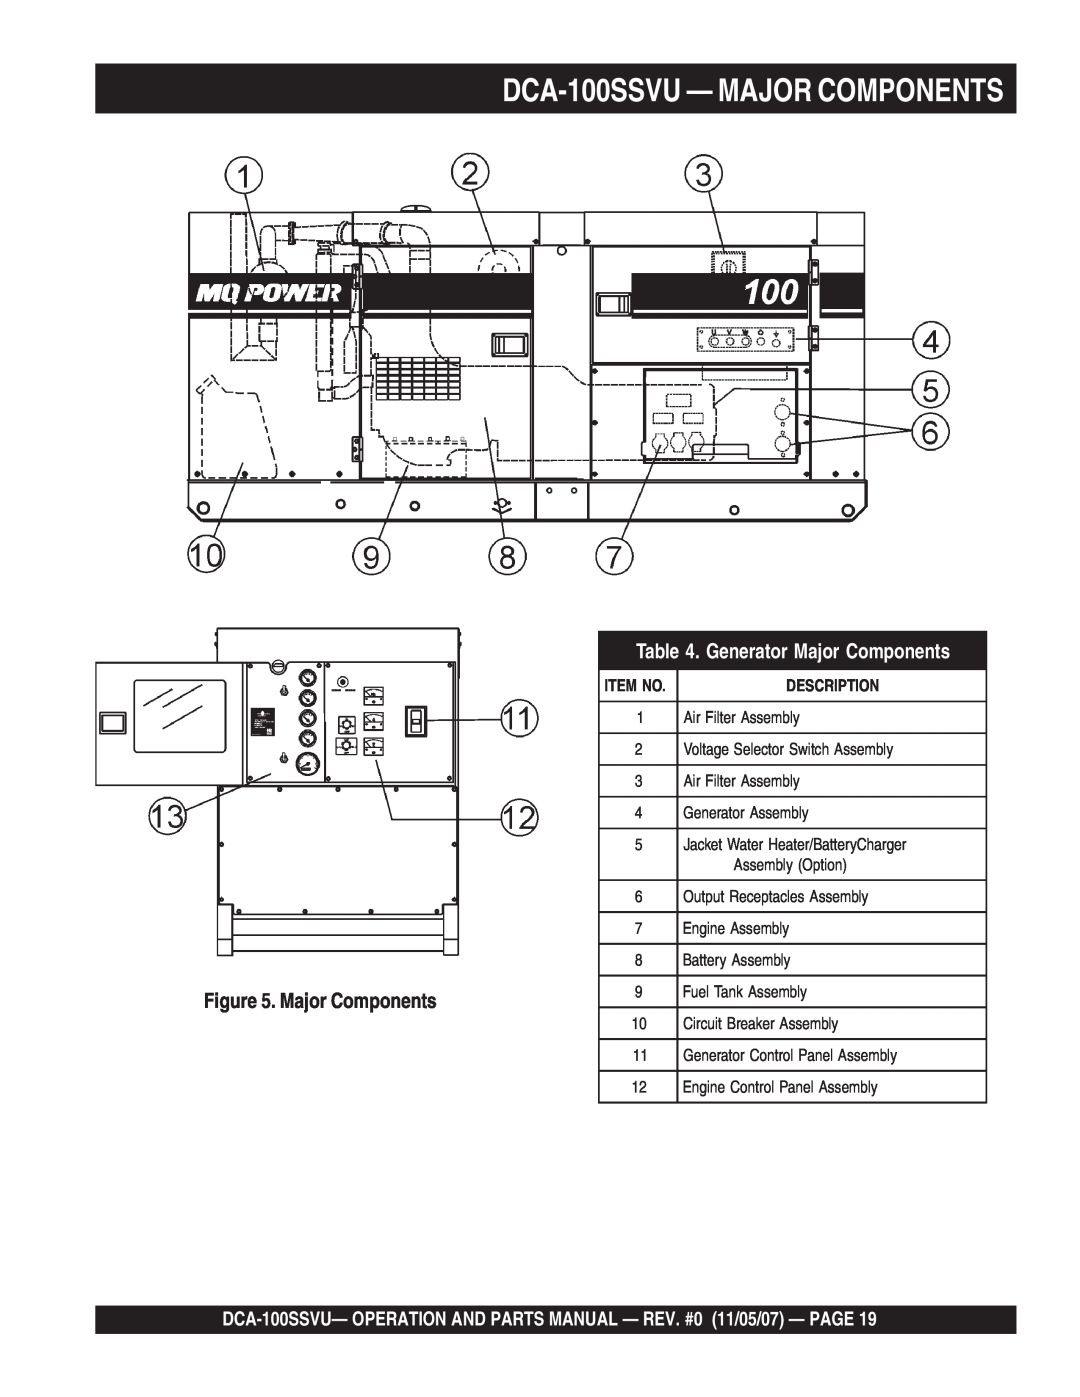 Multiquip operation manual DCA-100SSVU— MAJOR COMPONENTS, Generator Major Components, Description 